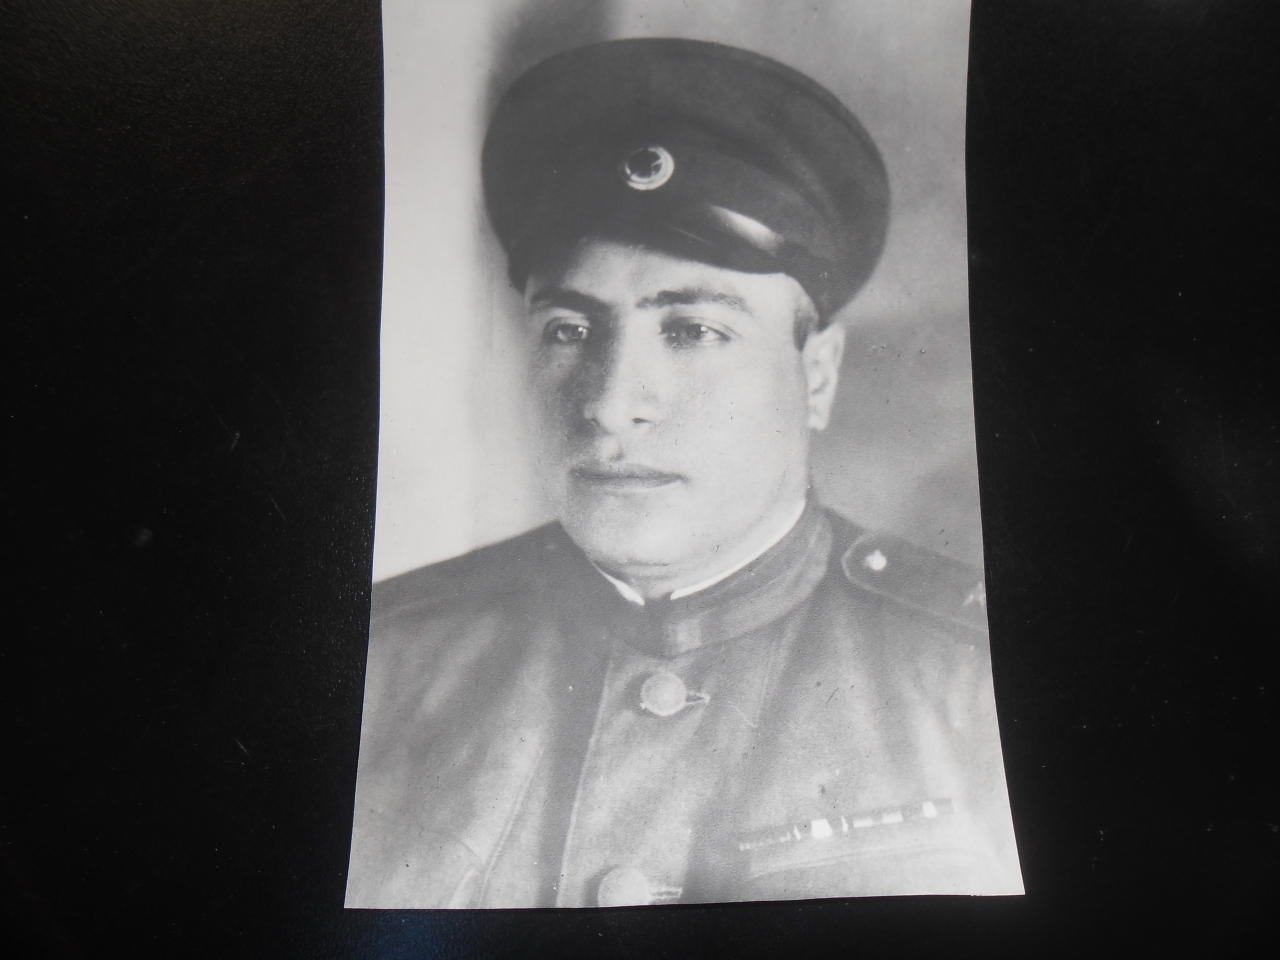 Լուսանկար՝  Ավետիք Բուռնազյանի (Հայրենական պատերազմի մասնակից,գեներալ-լեյտենանտ)